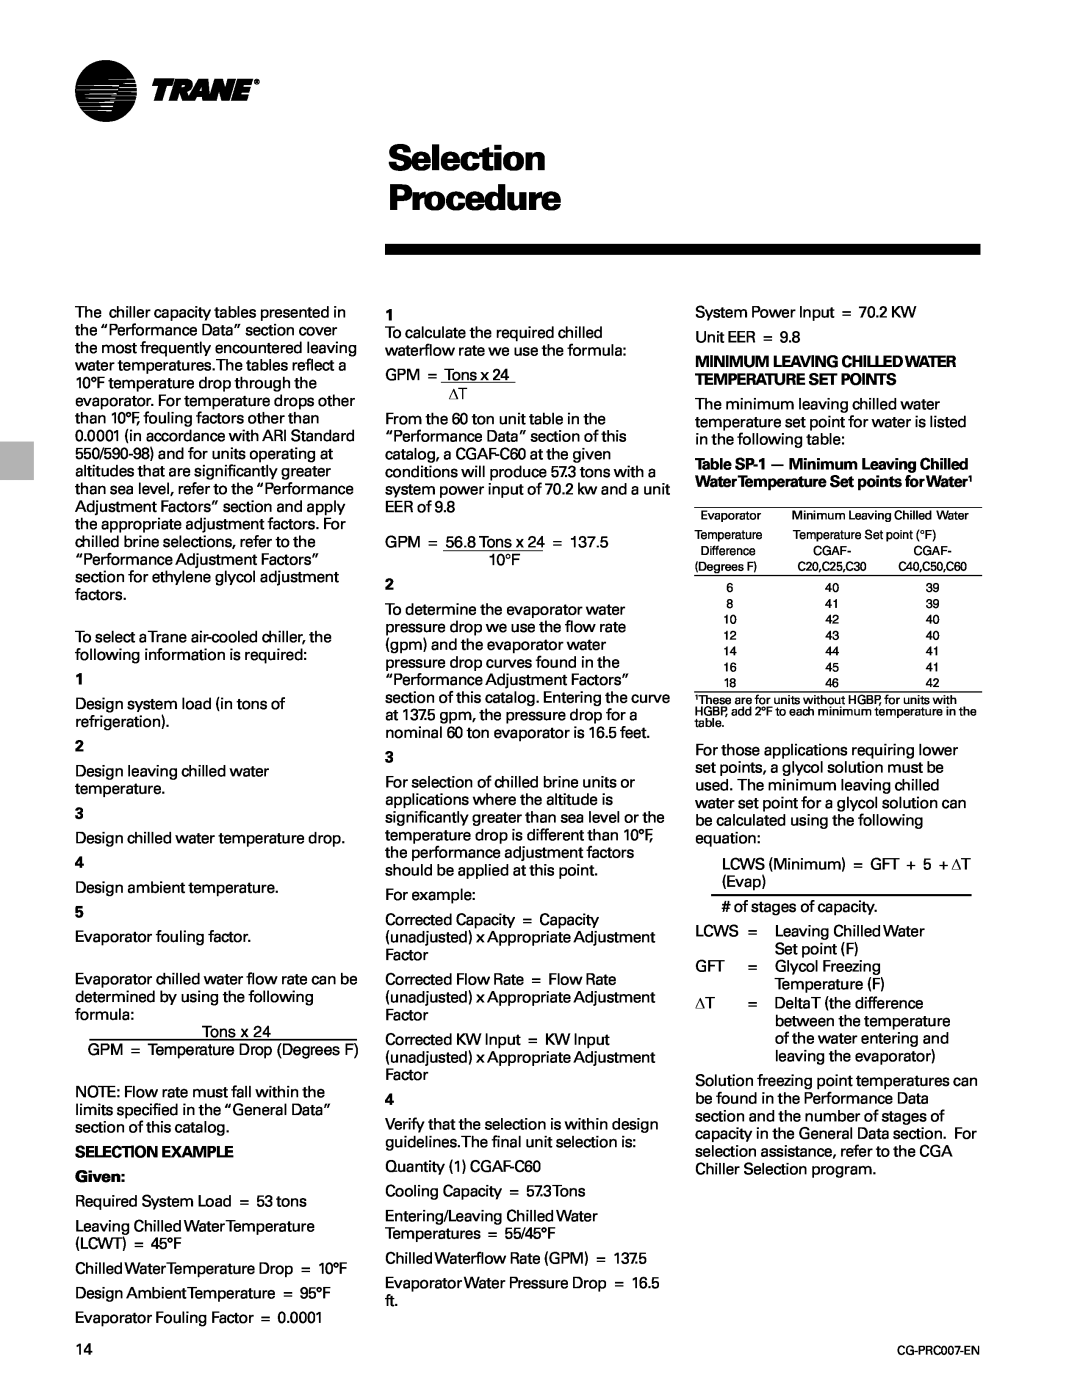 Trane CG-PRC007-EN manual Selection Procedure, SELECTION EXAMPLE Given 